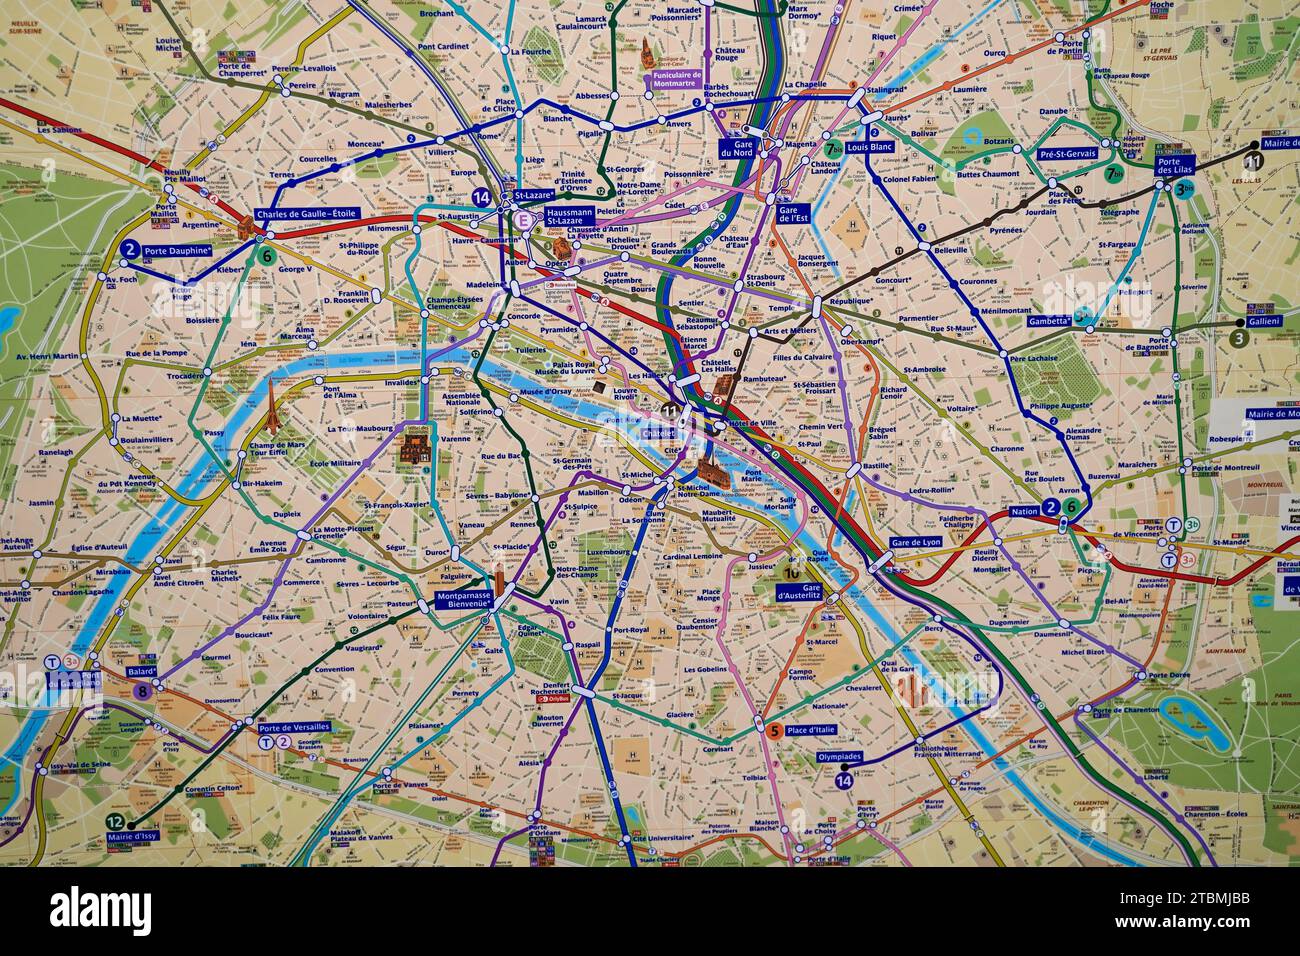 City map, Paris, France Stock Photo